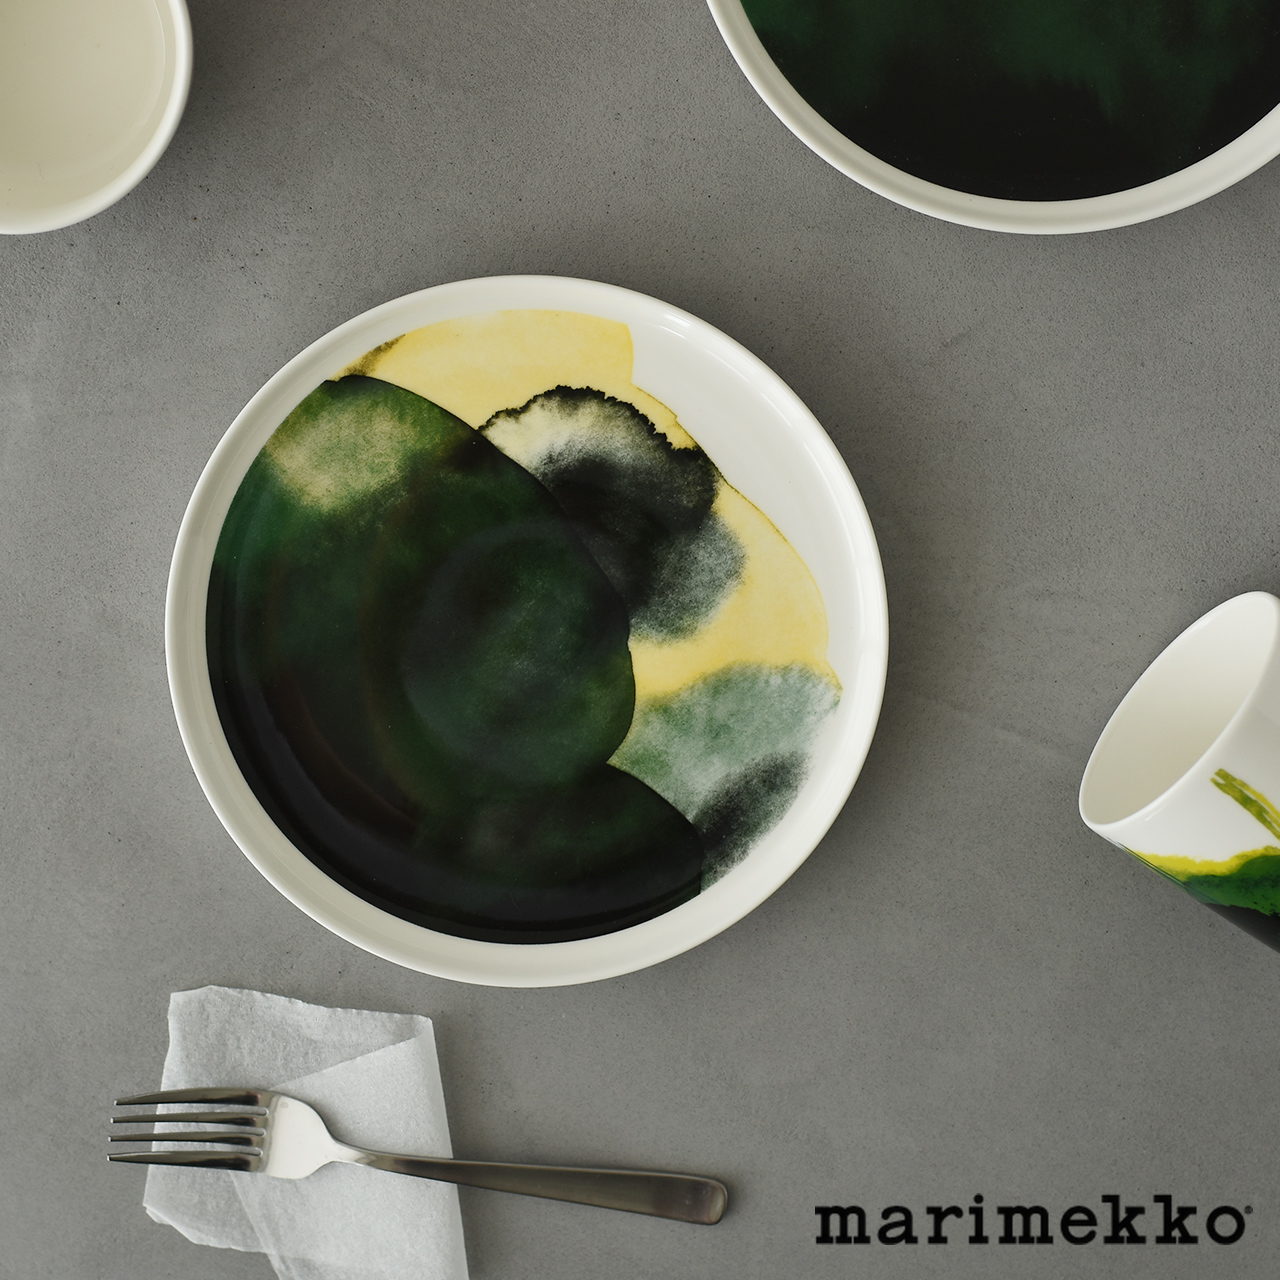 激安超安値 マリメッコ プレート marimekko 皿 平皿 北欧 フィンランド